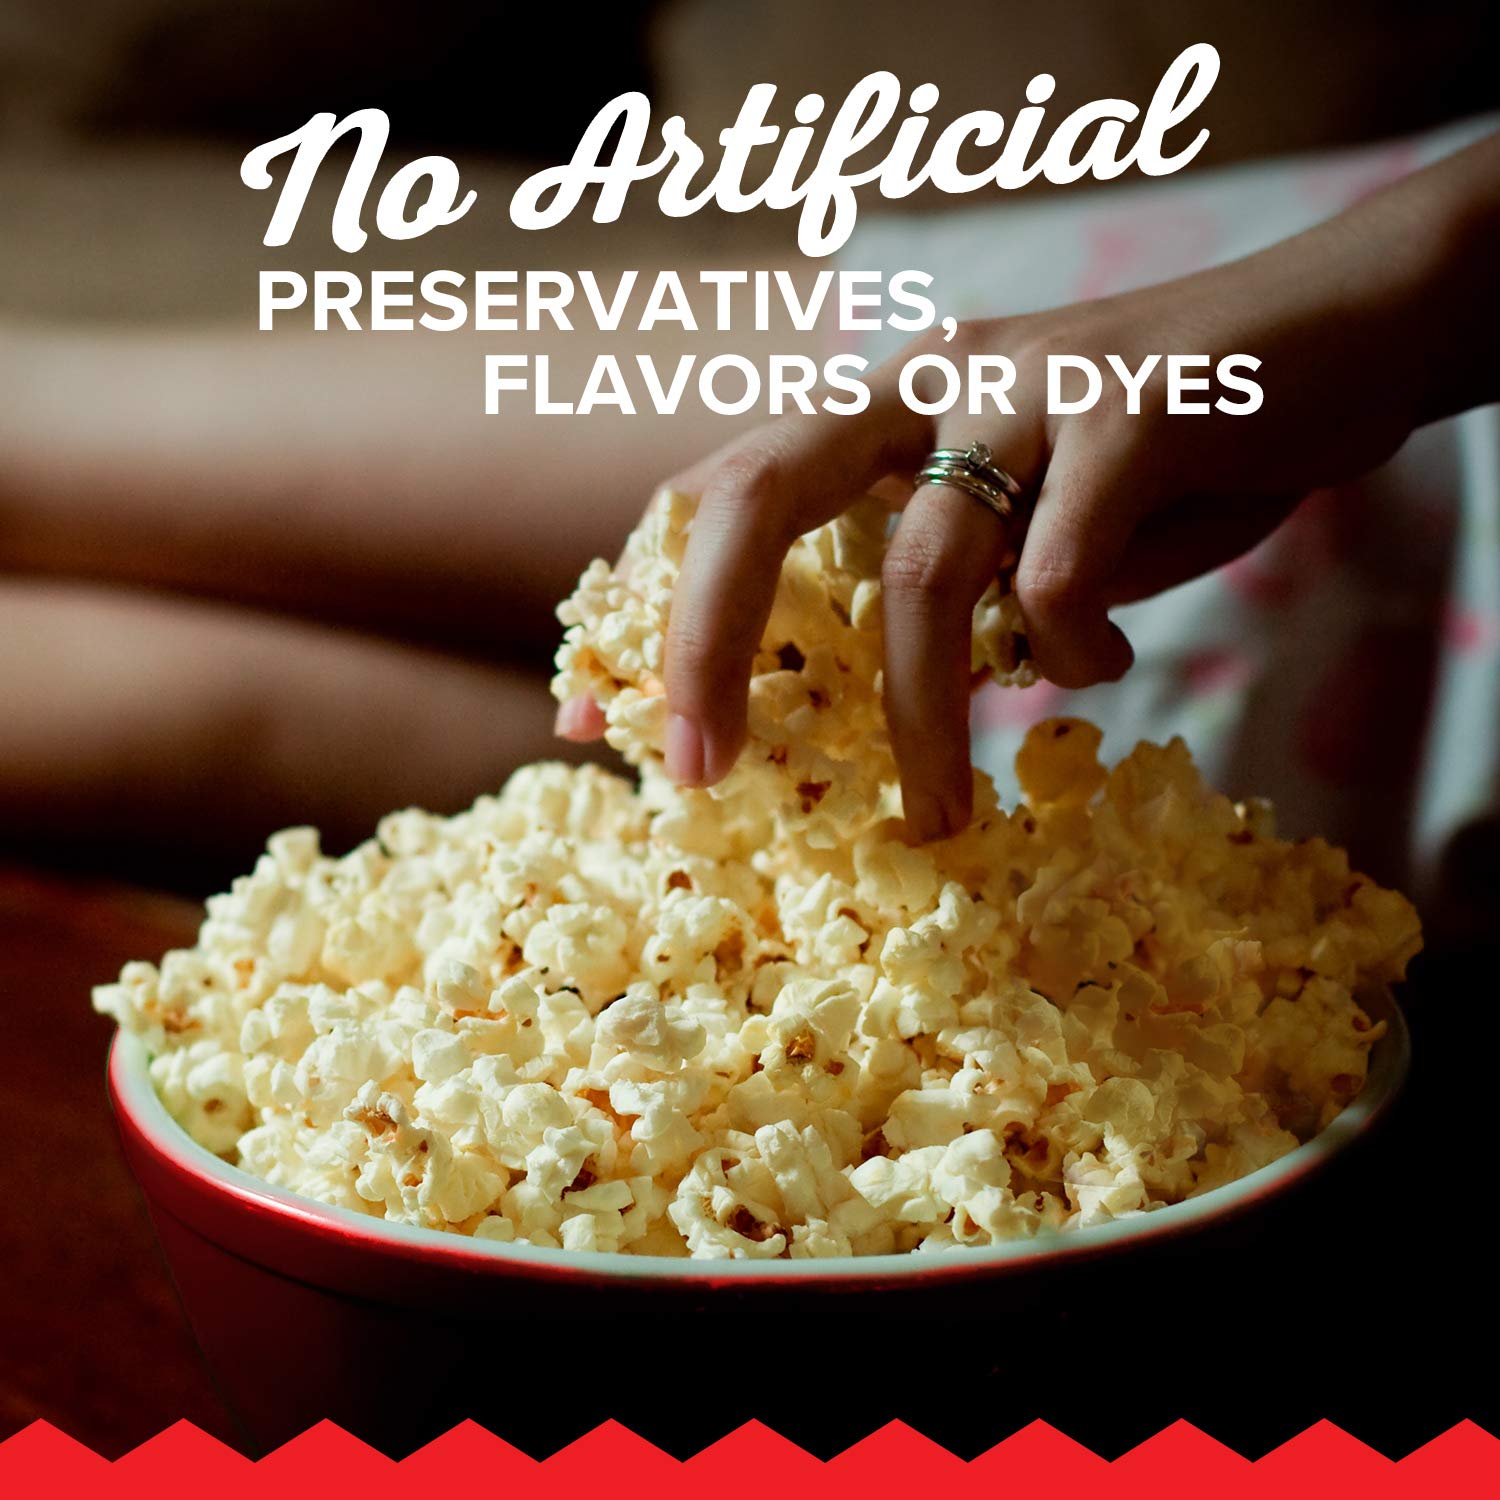 Orville Redenbacher vs. Pop Secret vs. Jolly Time vs. ACT II: Which Makes the Best Popcorn Brand?